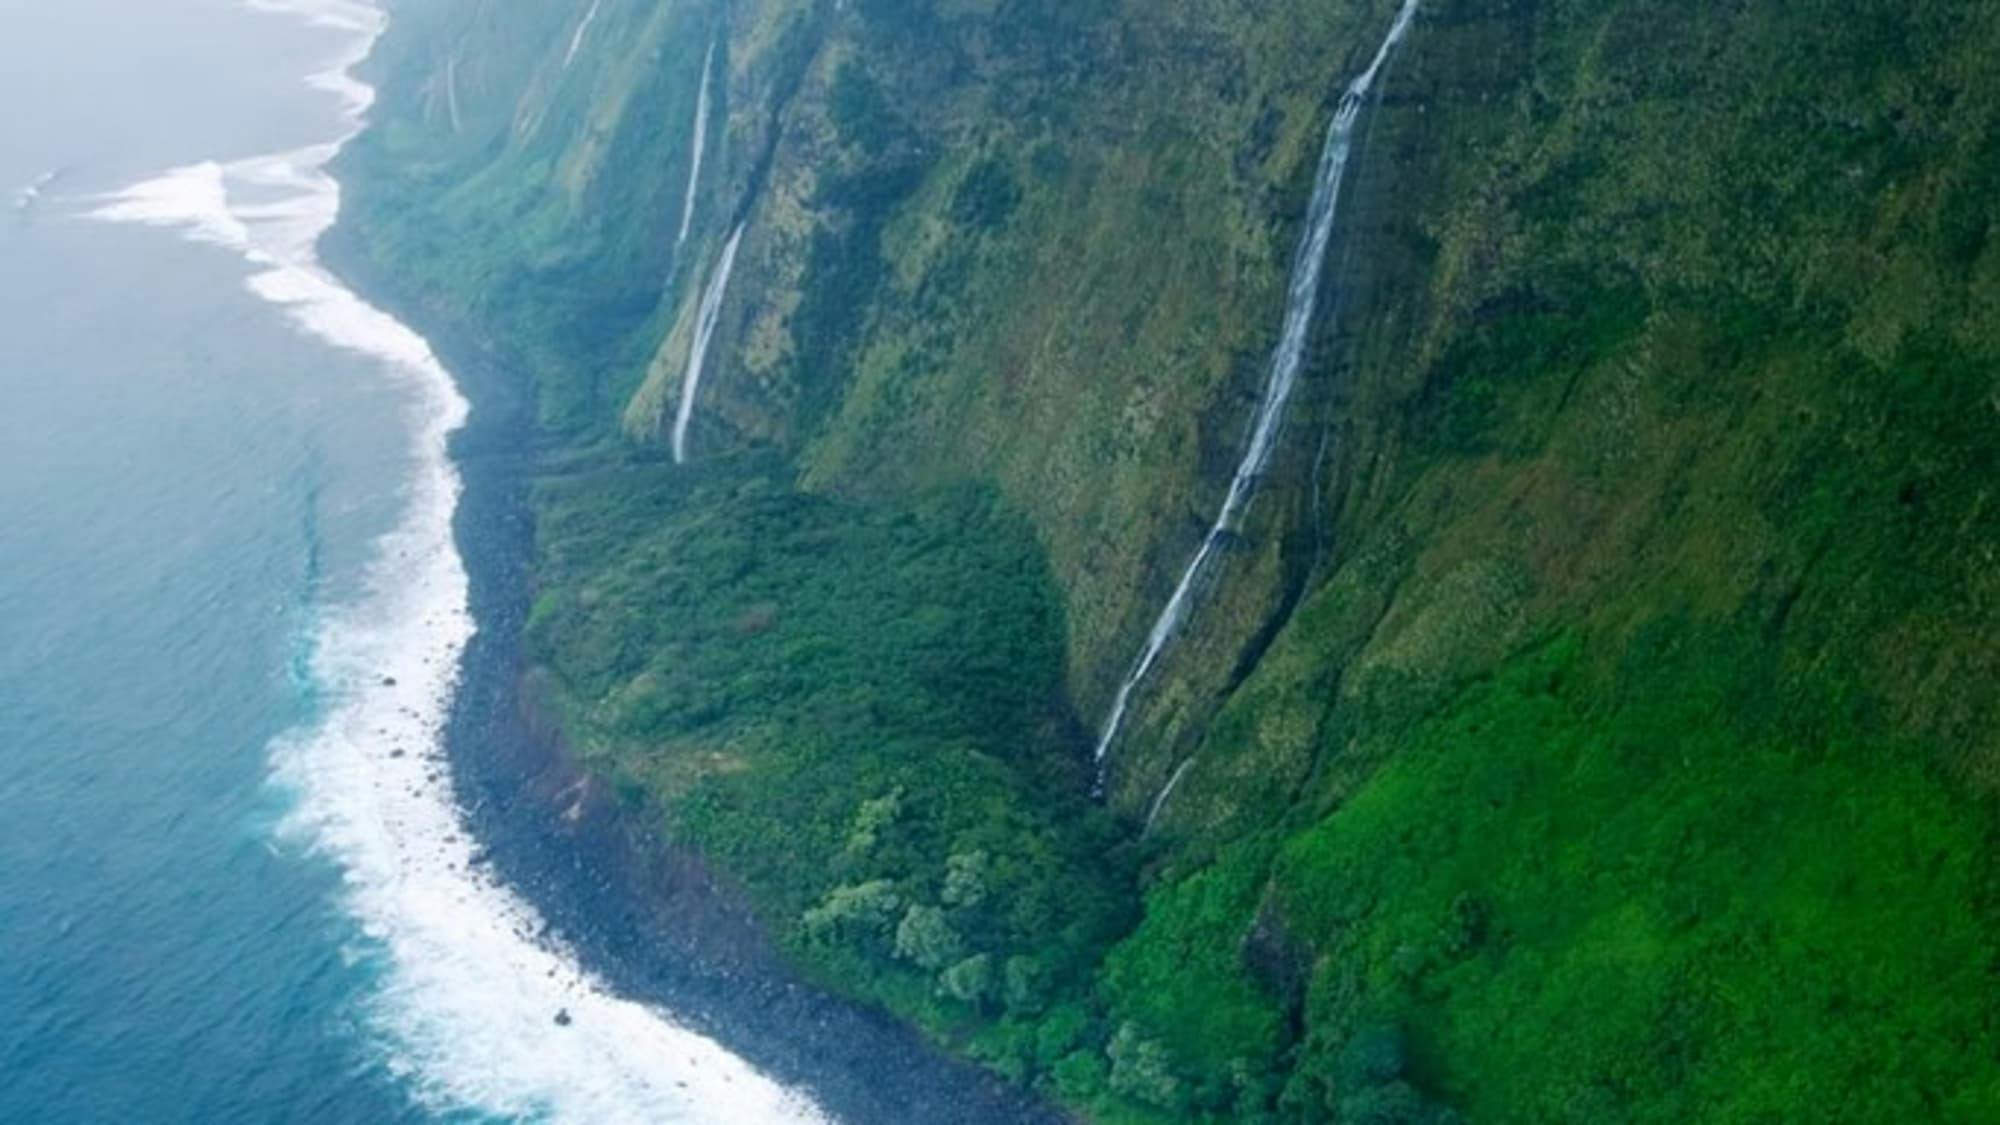 Kohala coast with waterfalls 